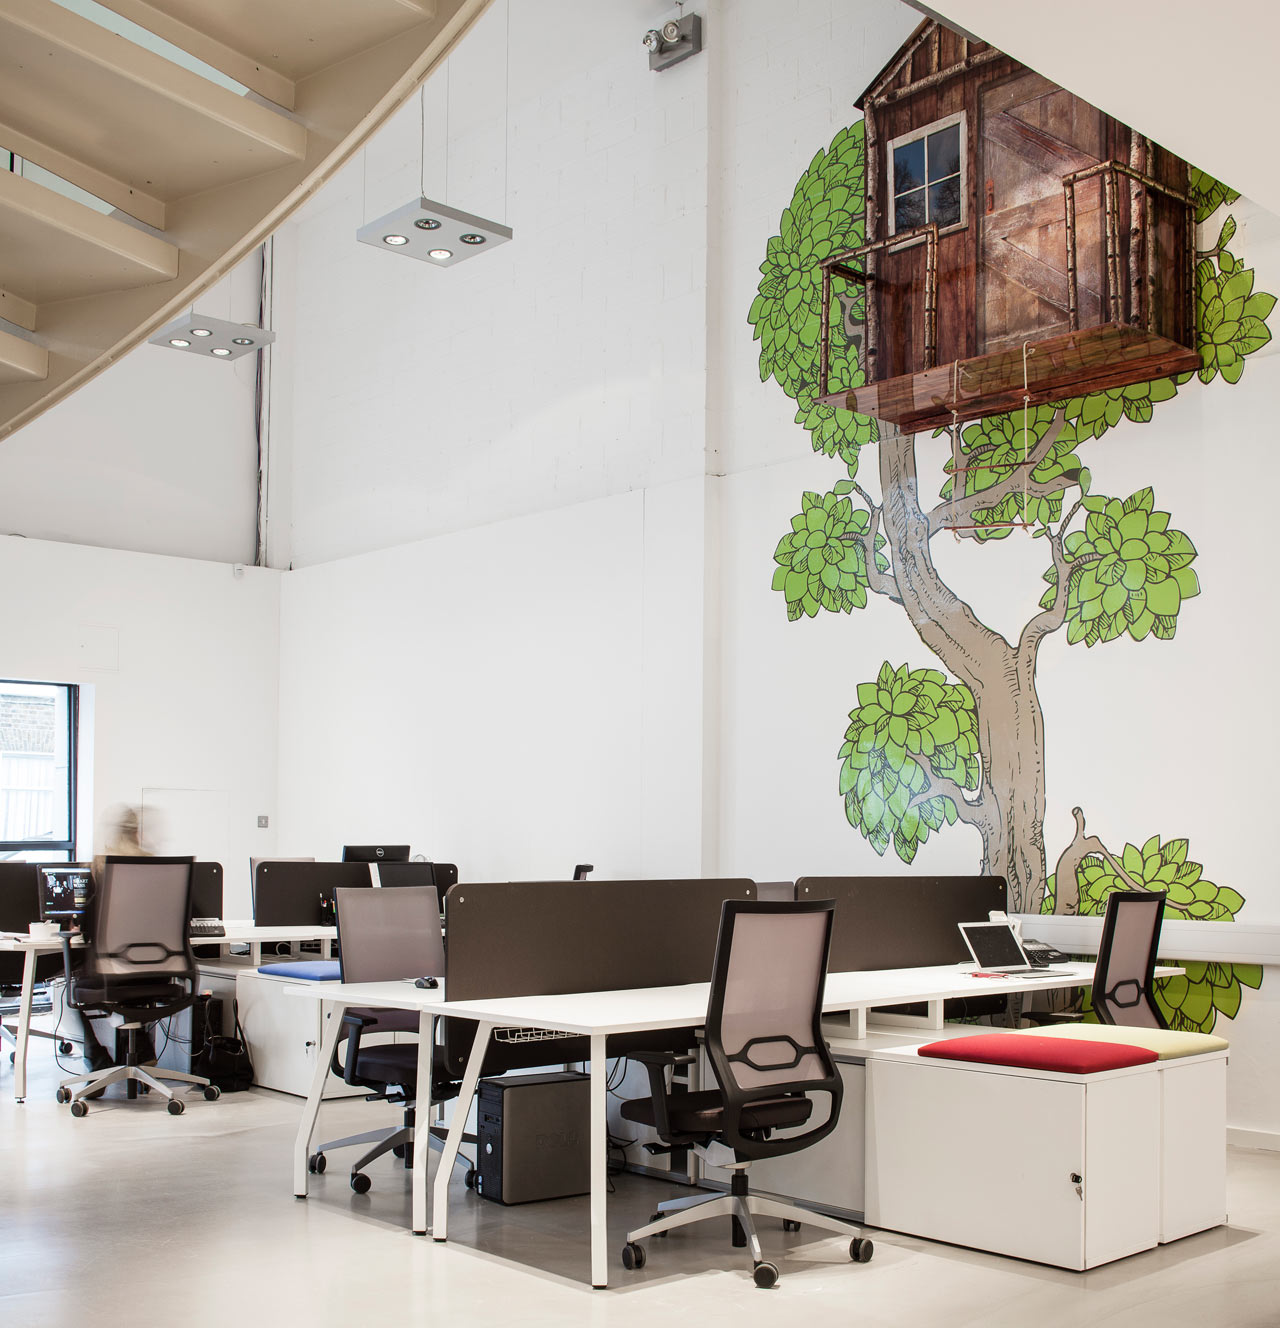 Nová kancelář VERVE má auto i stromy